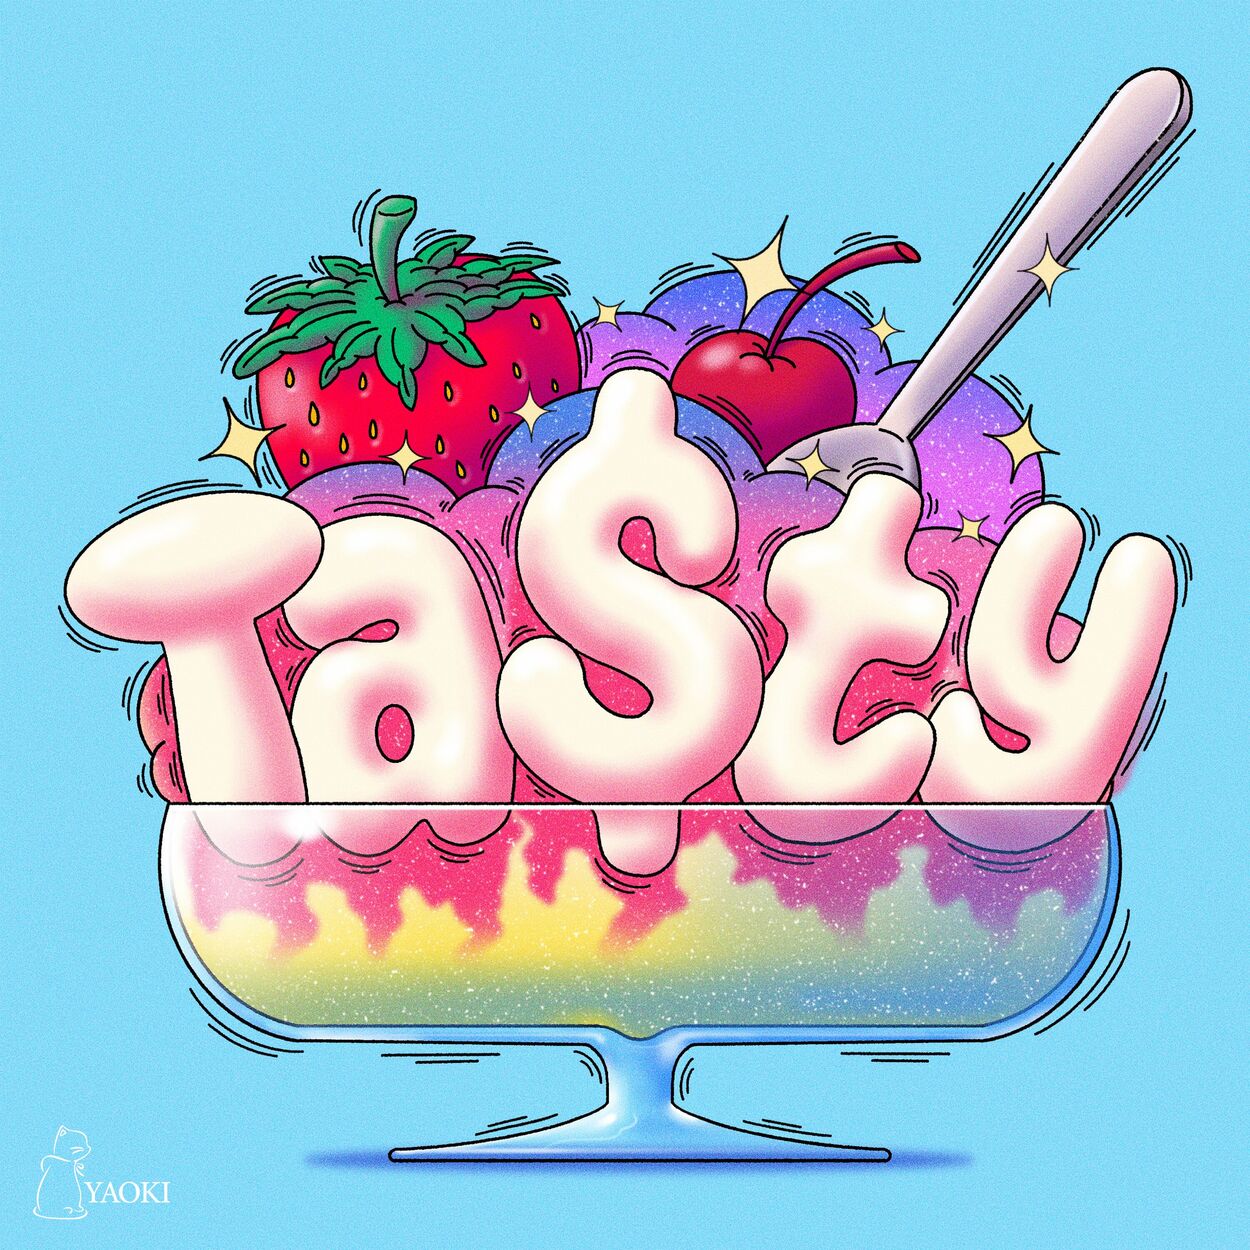 JUST B – Tasty – Single